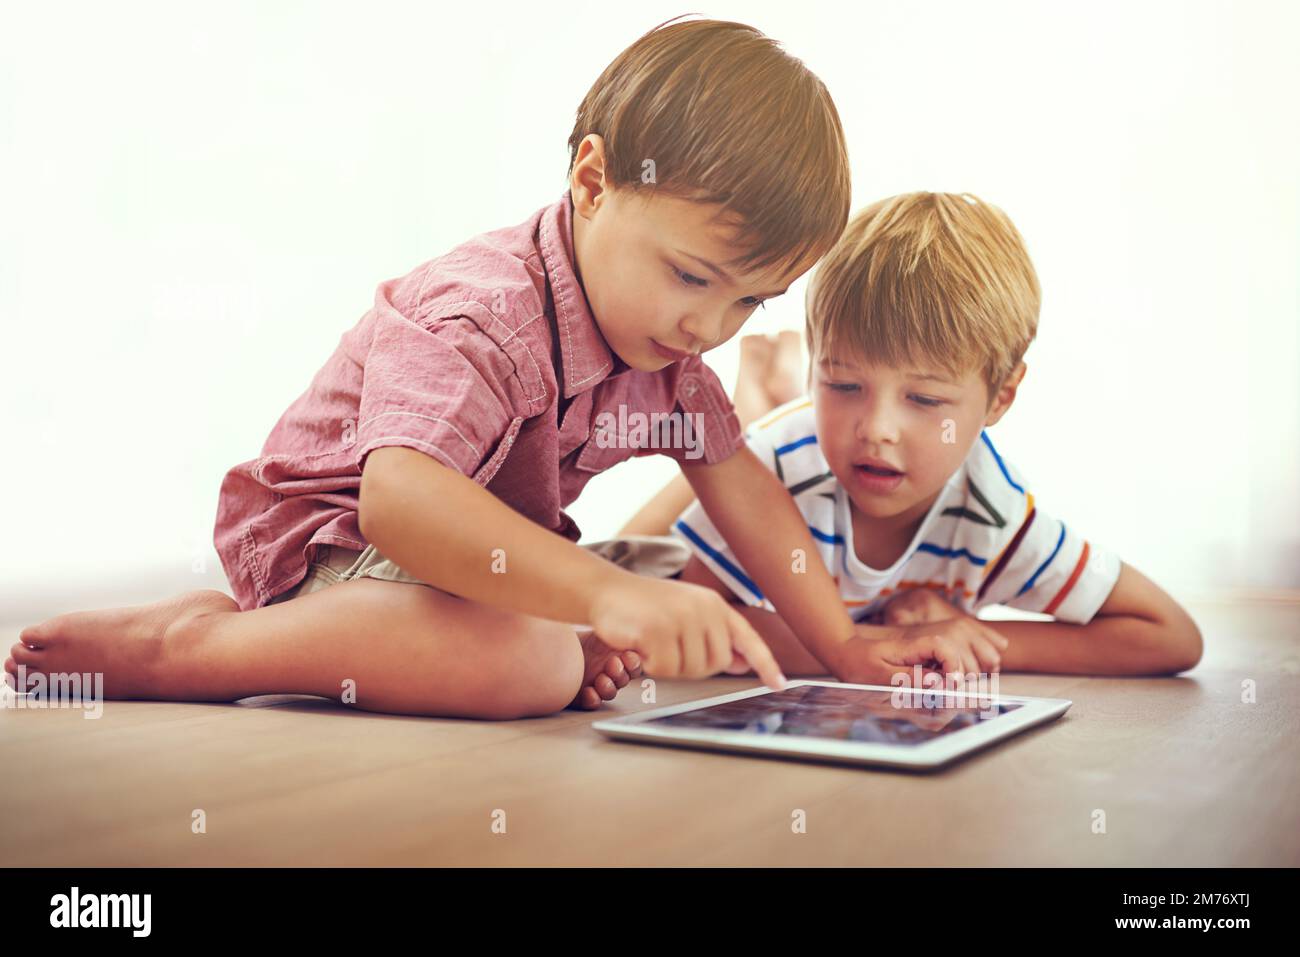 Es gibt so viel, was sie online lernen können. Zwei kleine Jungen, die zusammen ein digitales Tablet benutzen, während sie auf dem Boden sitzen. Stockfoto